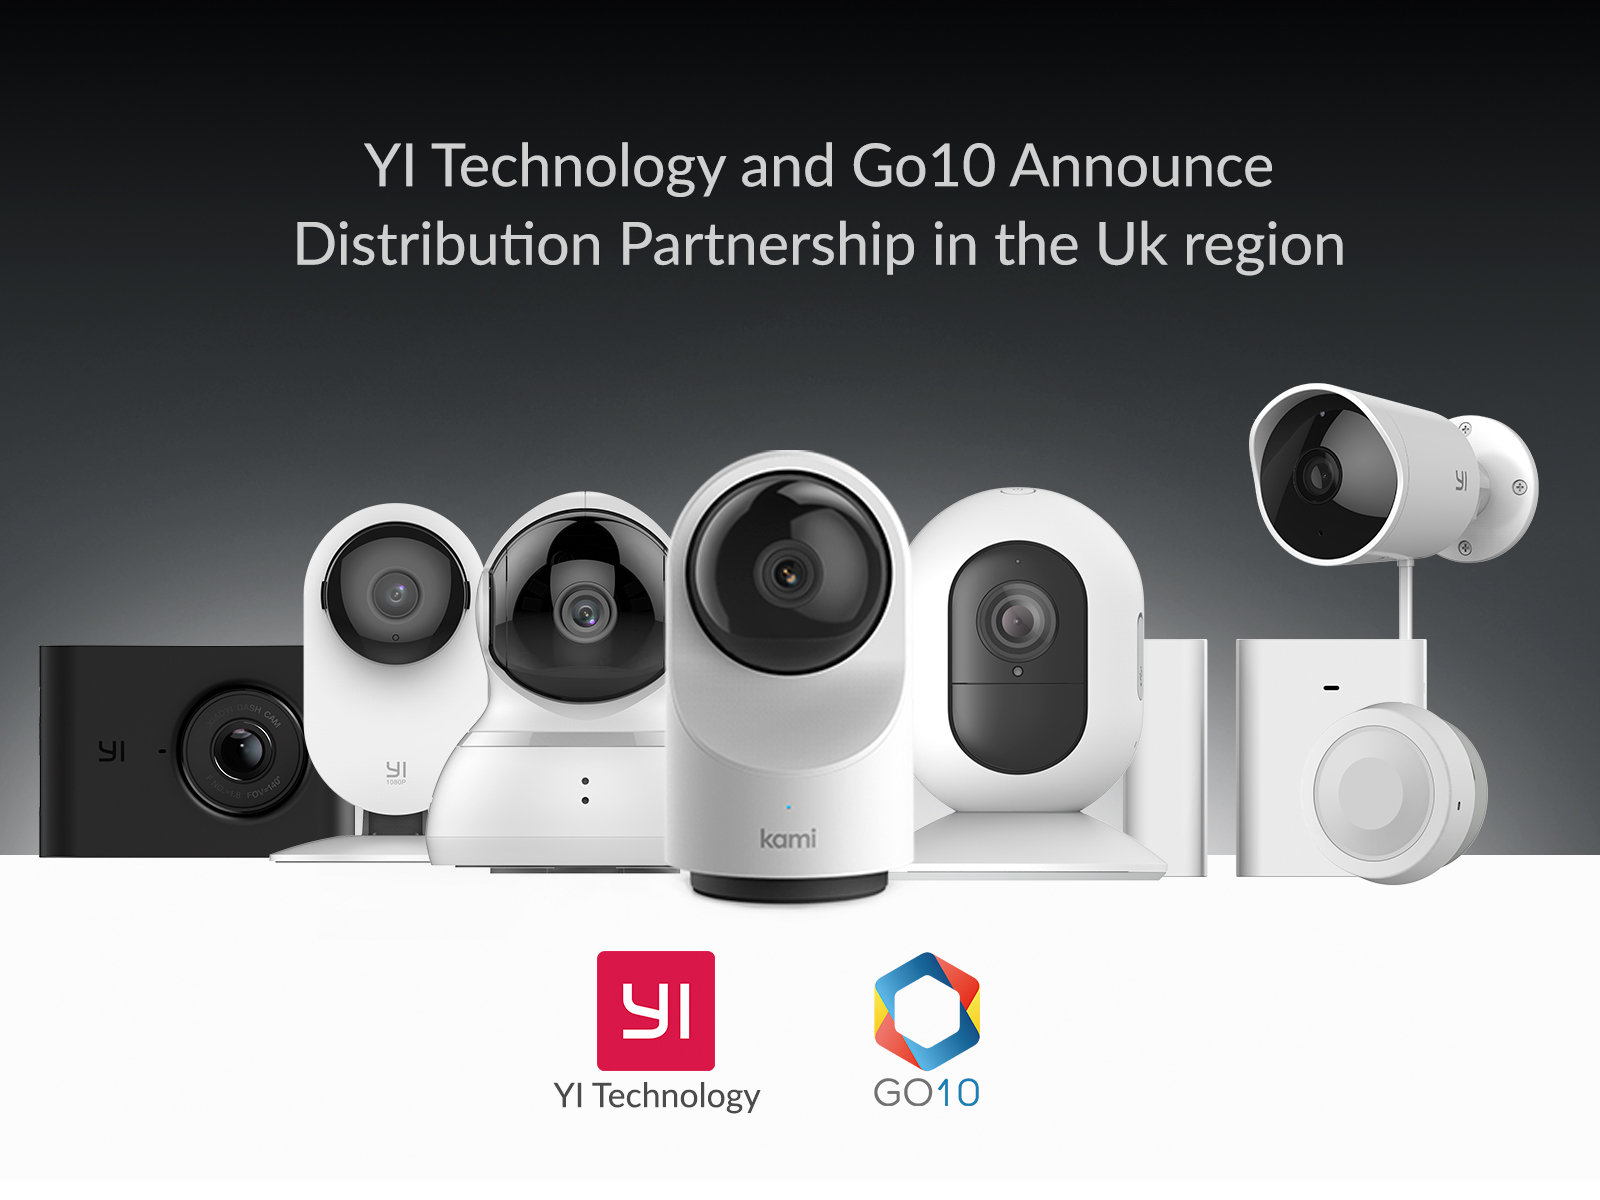 yi-technology-and-go10-partnership-uk